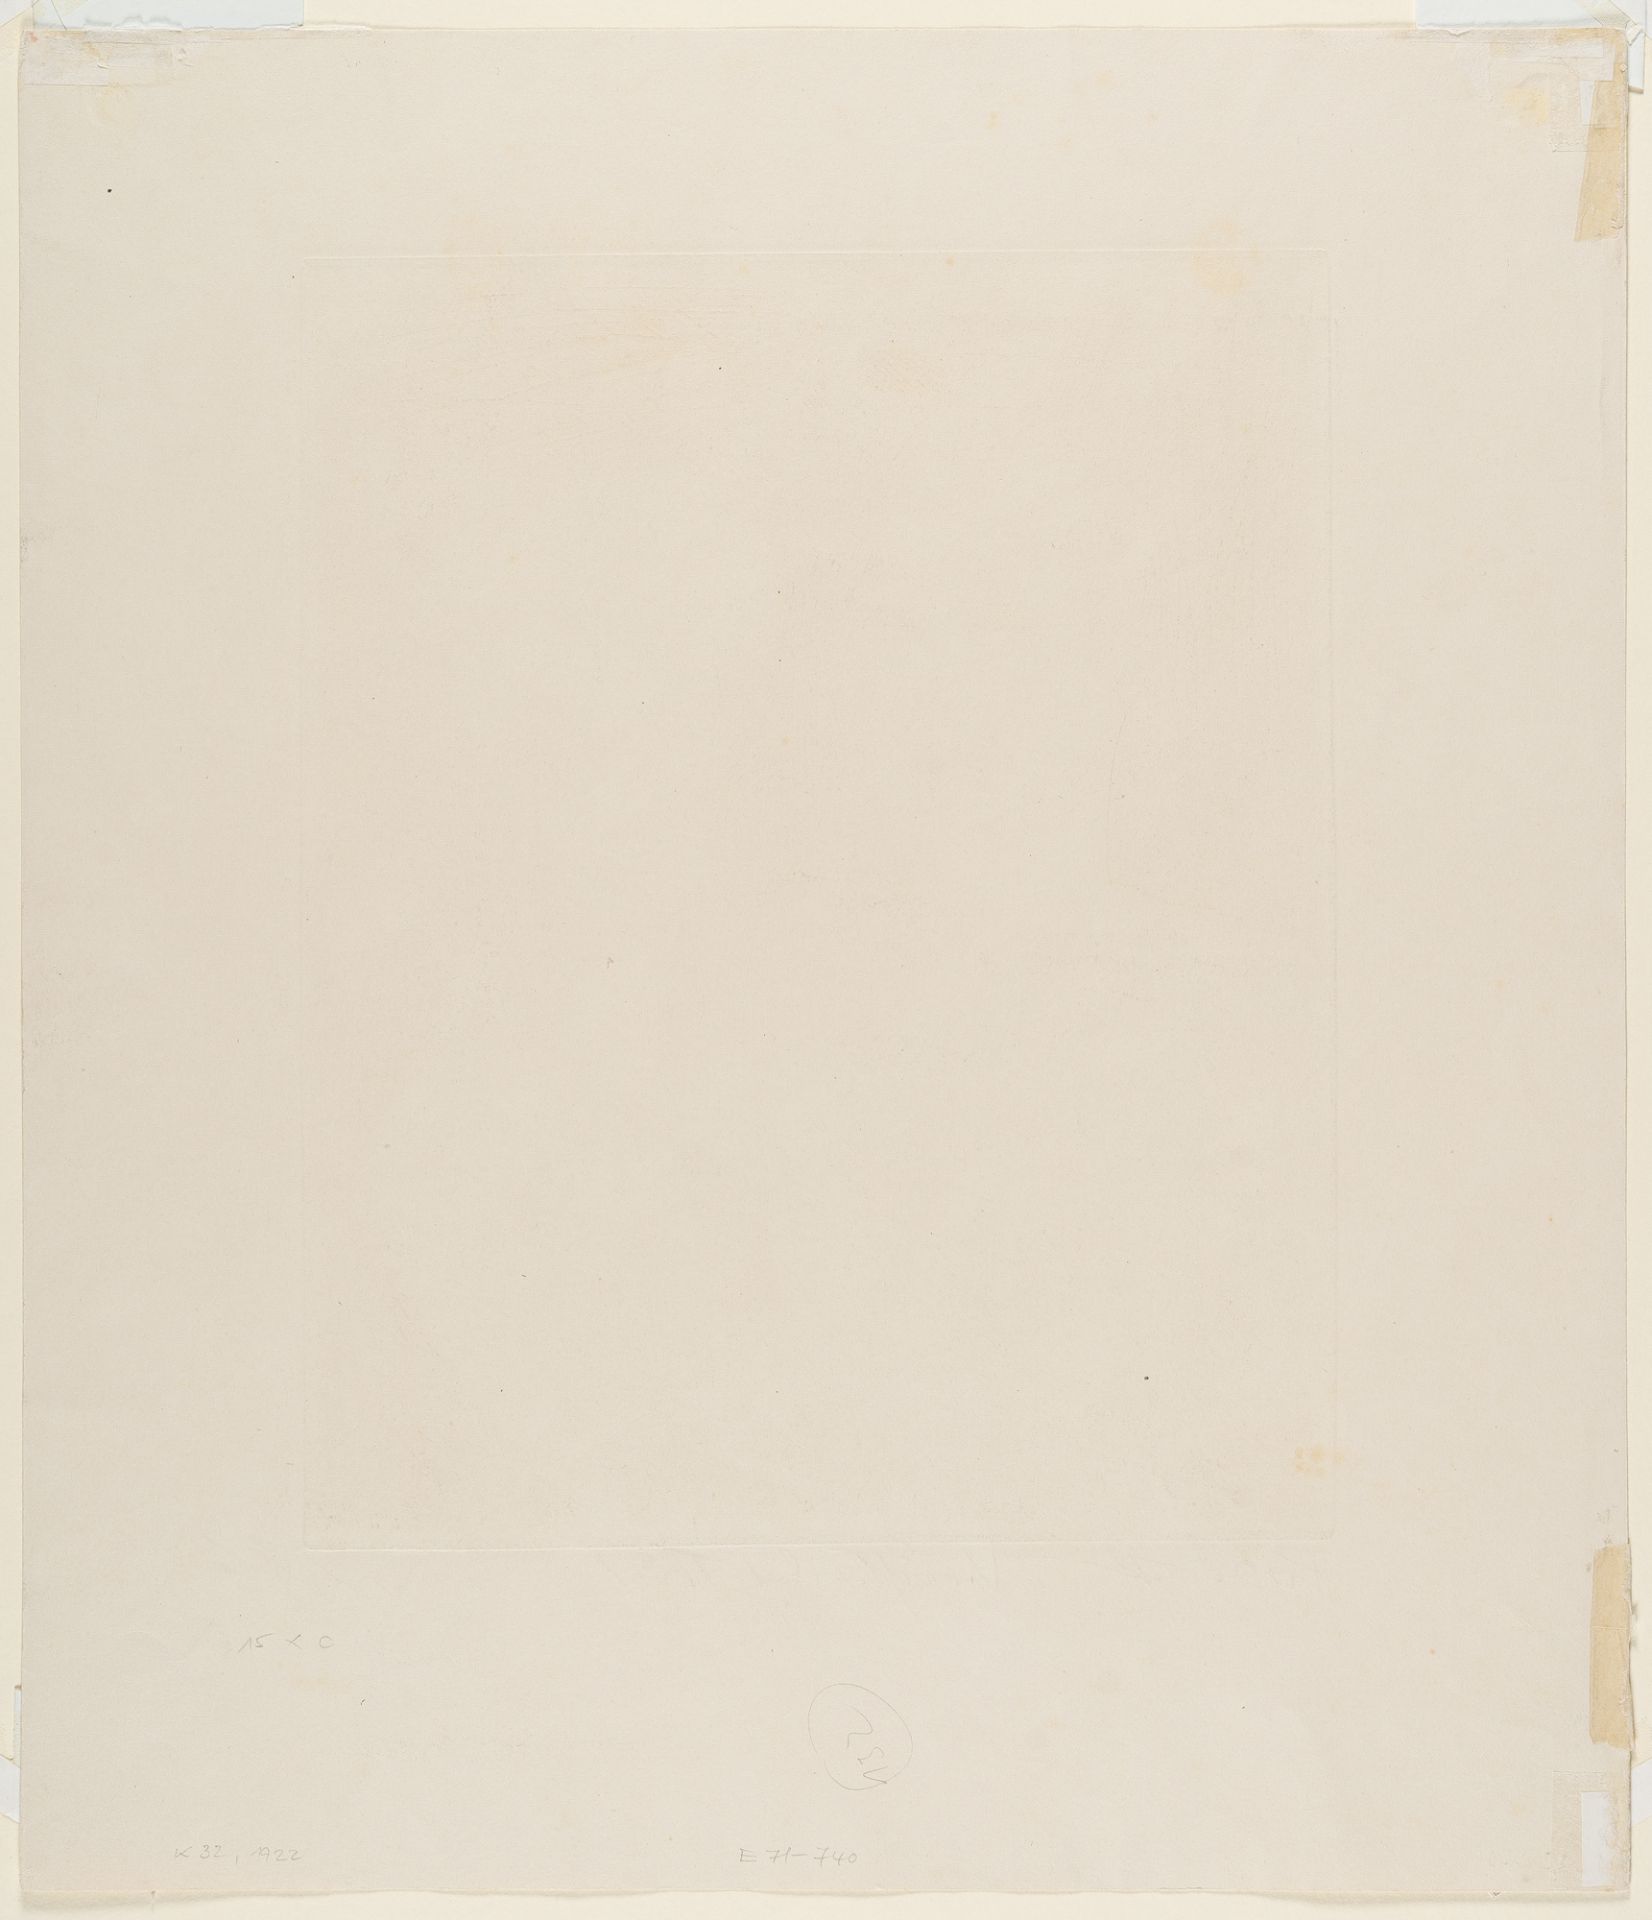 Otto Dix (1891 Untermhaus bei Gera - Singen 1969), “Defier of death”Etching with drypoint on - Image 3 of 3